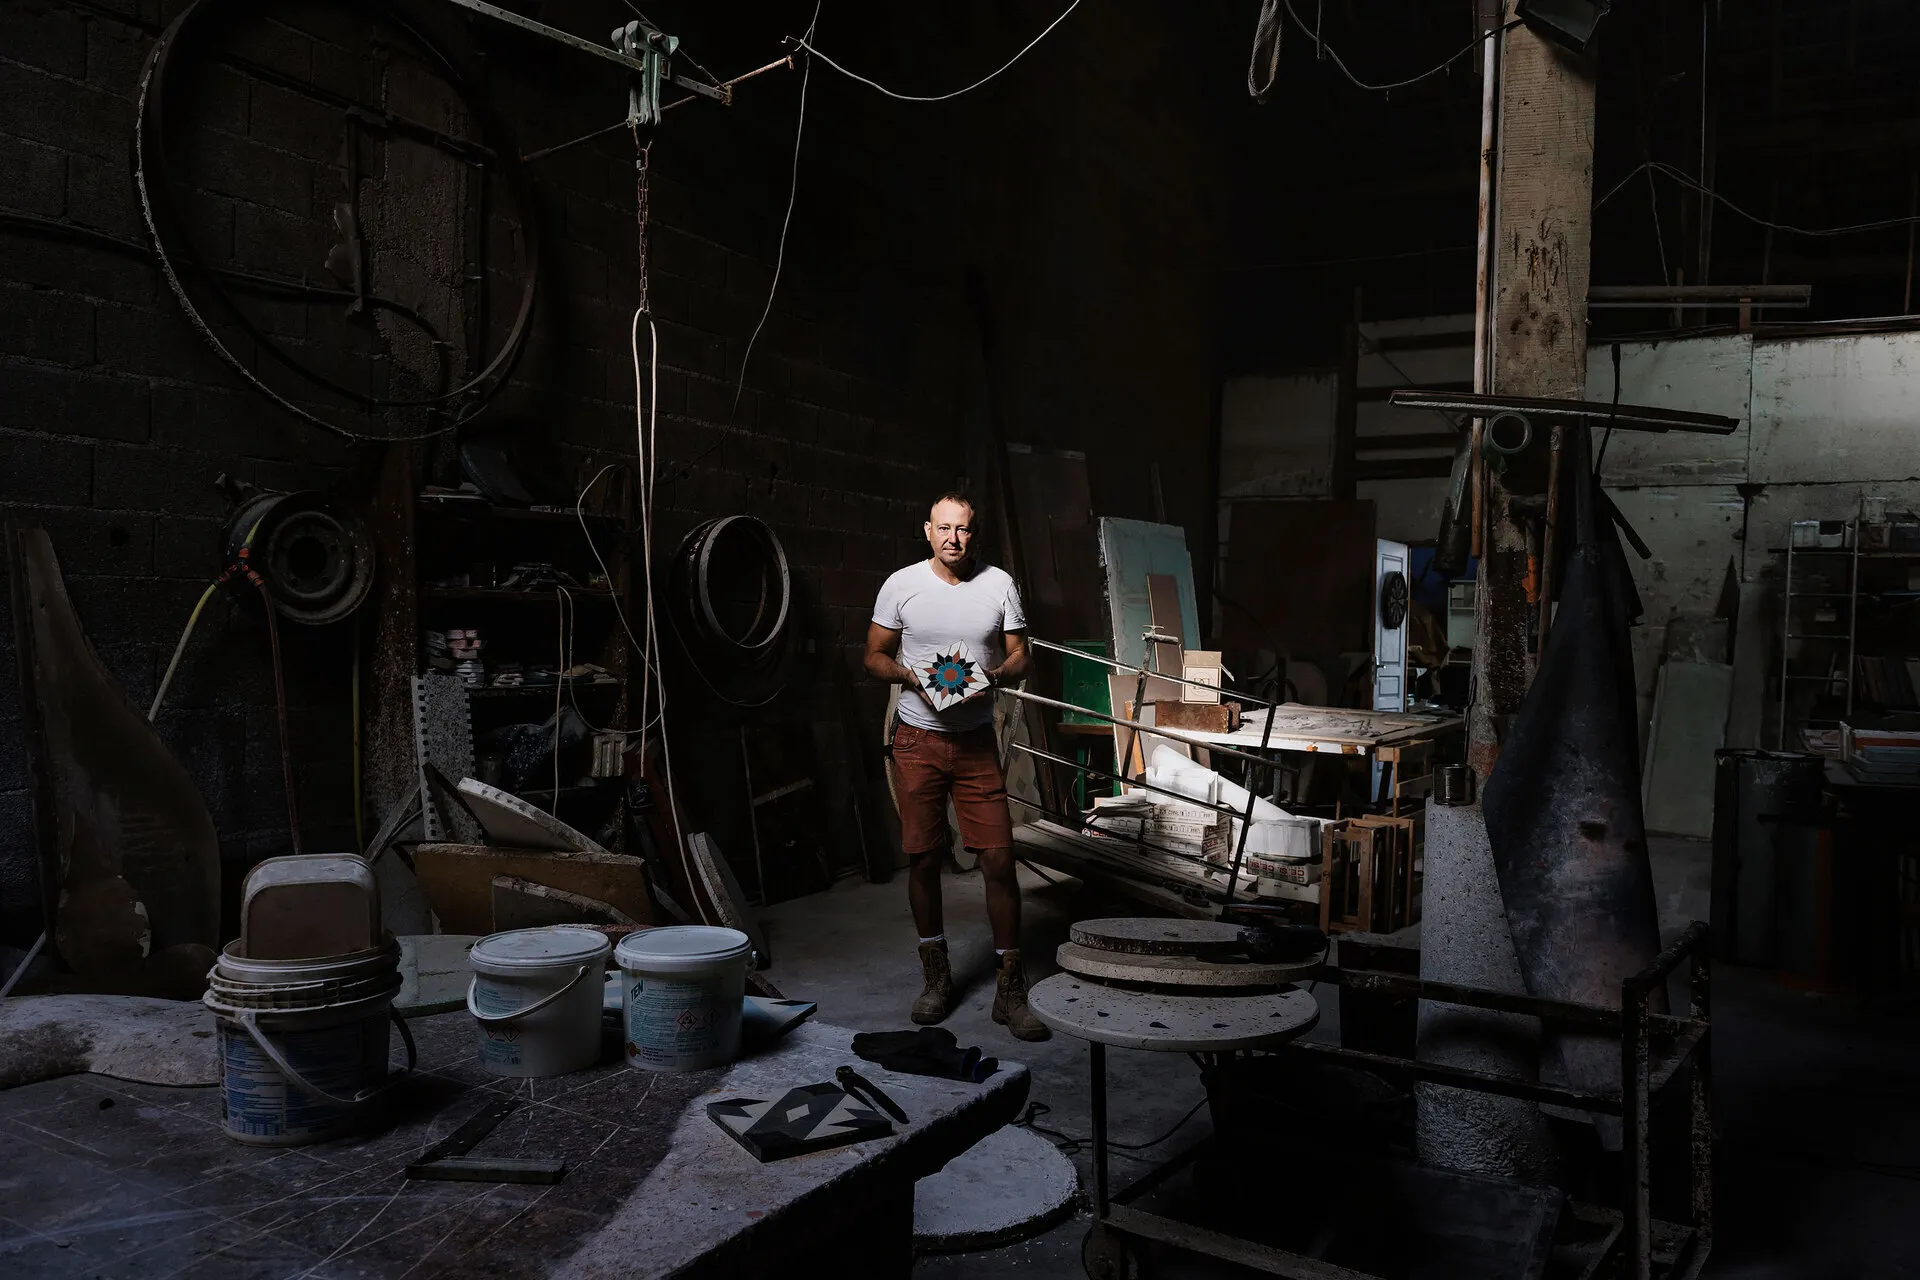 David Dalichoux tenant un de ses carreaux de ciments ua milieu de son atelier